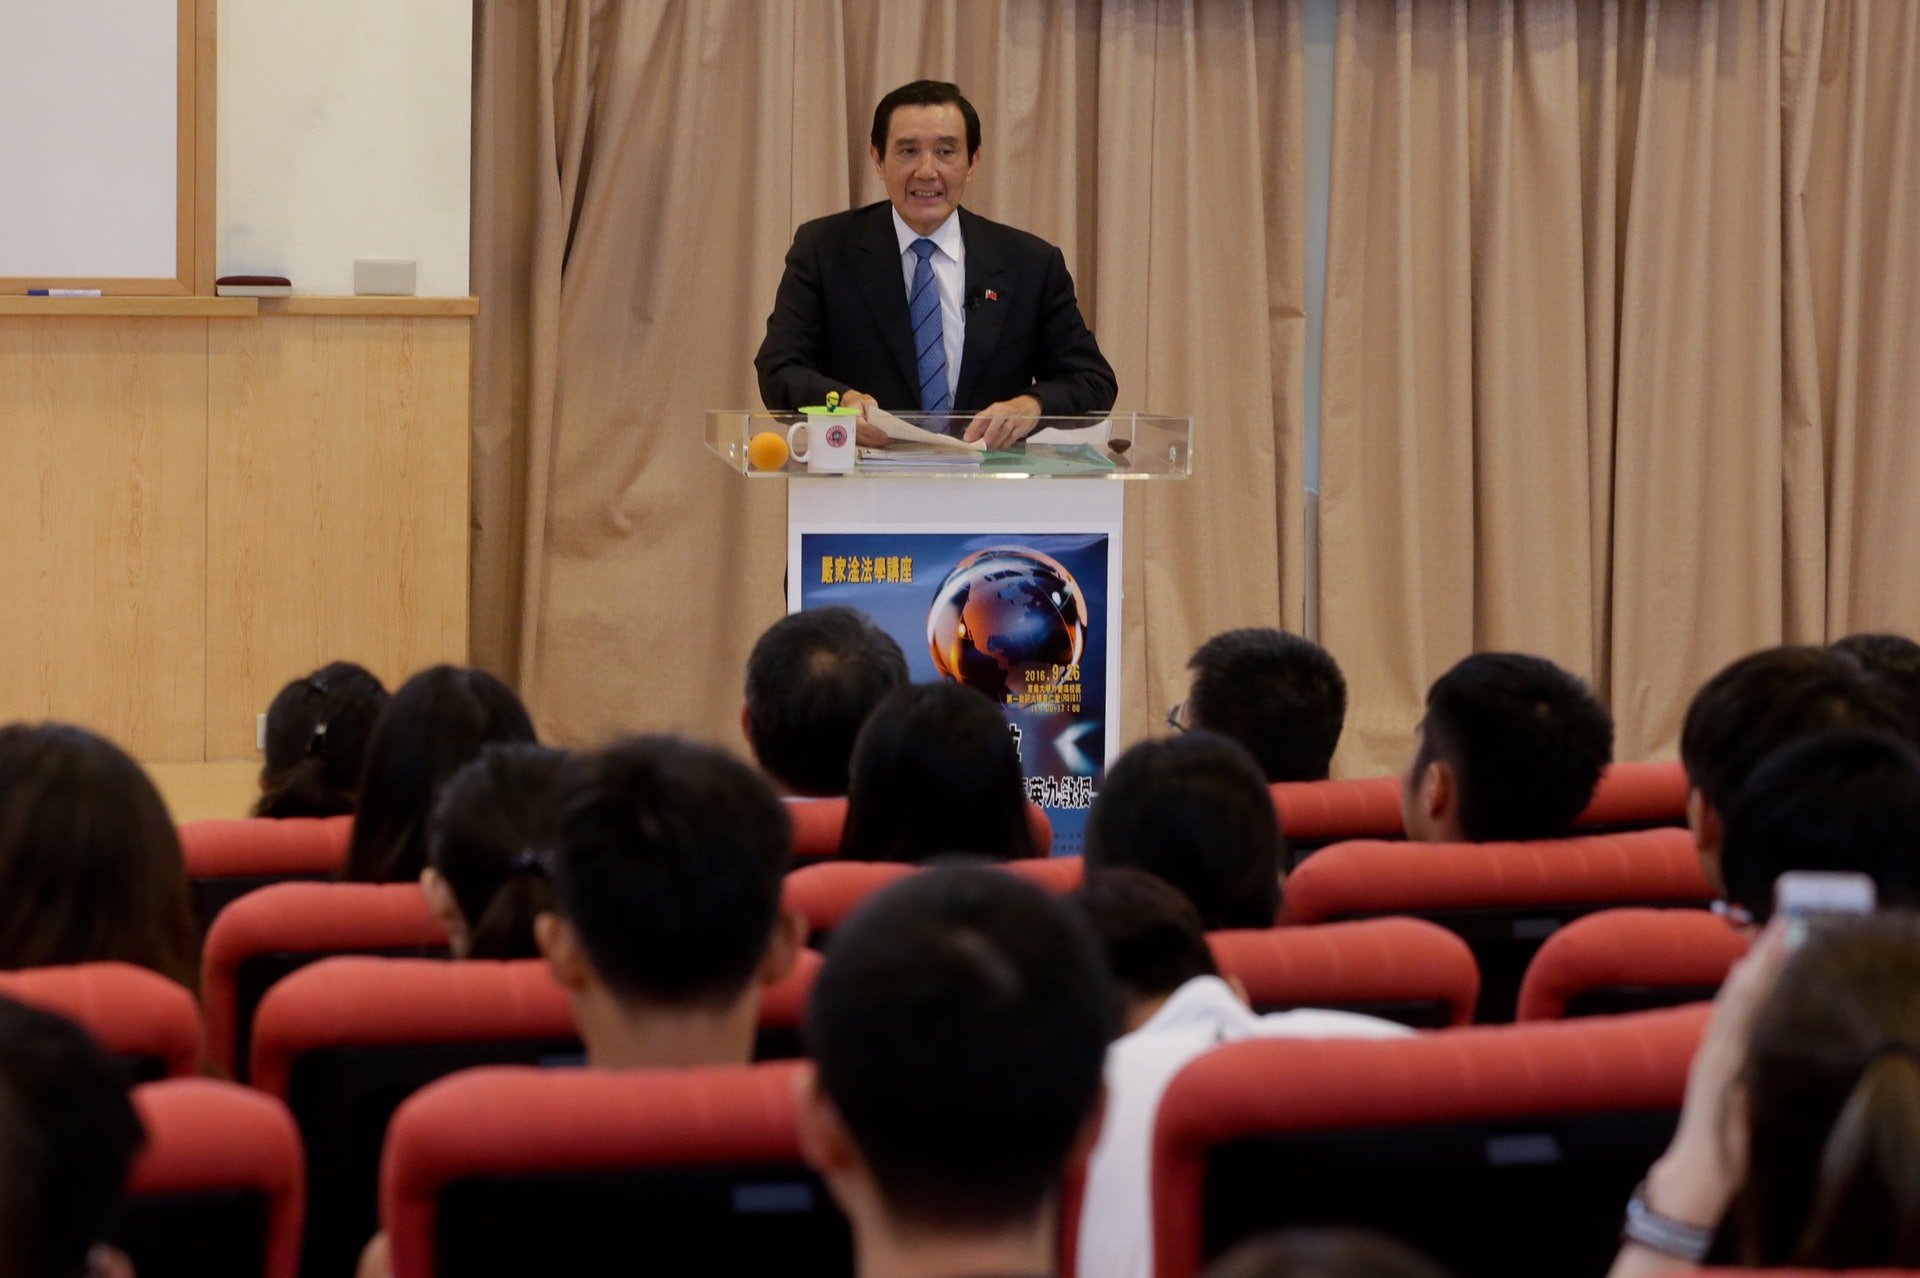 馬英九以教授身分在東吳大學演講，講題是 「台灣的國際法定位」。  (中央社)